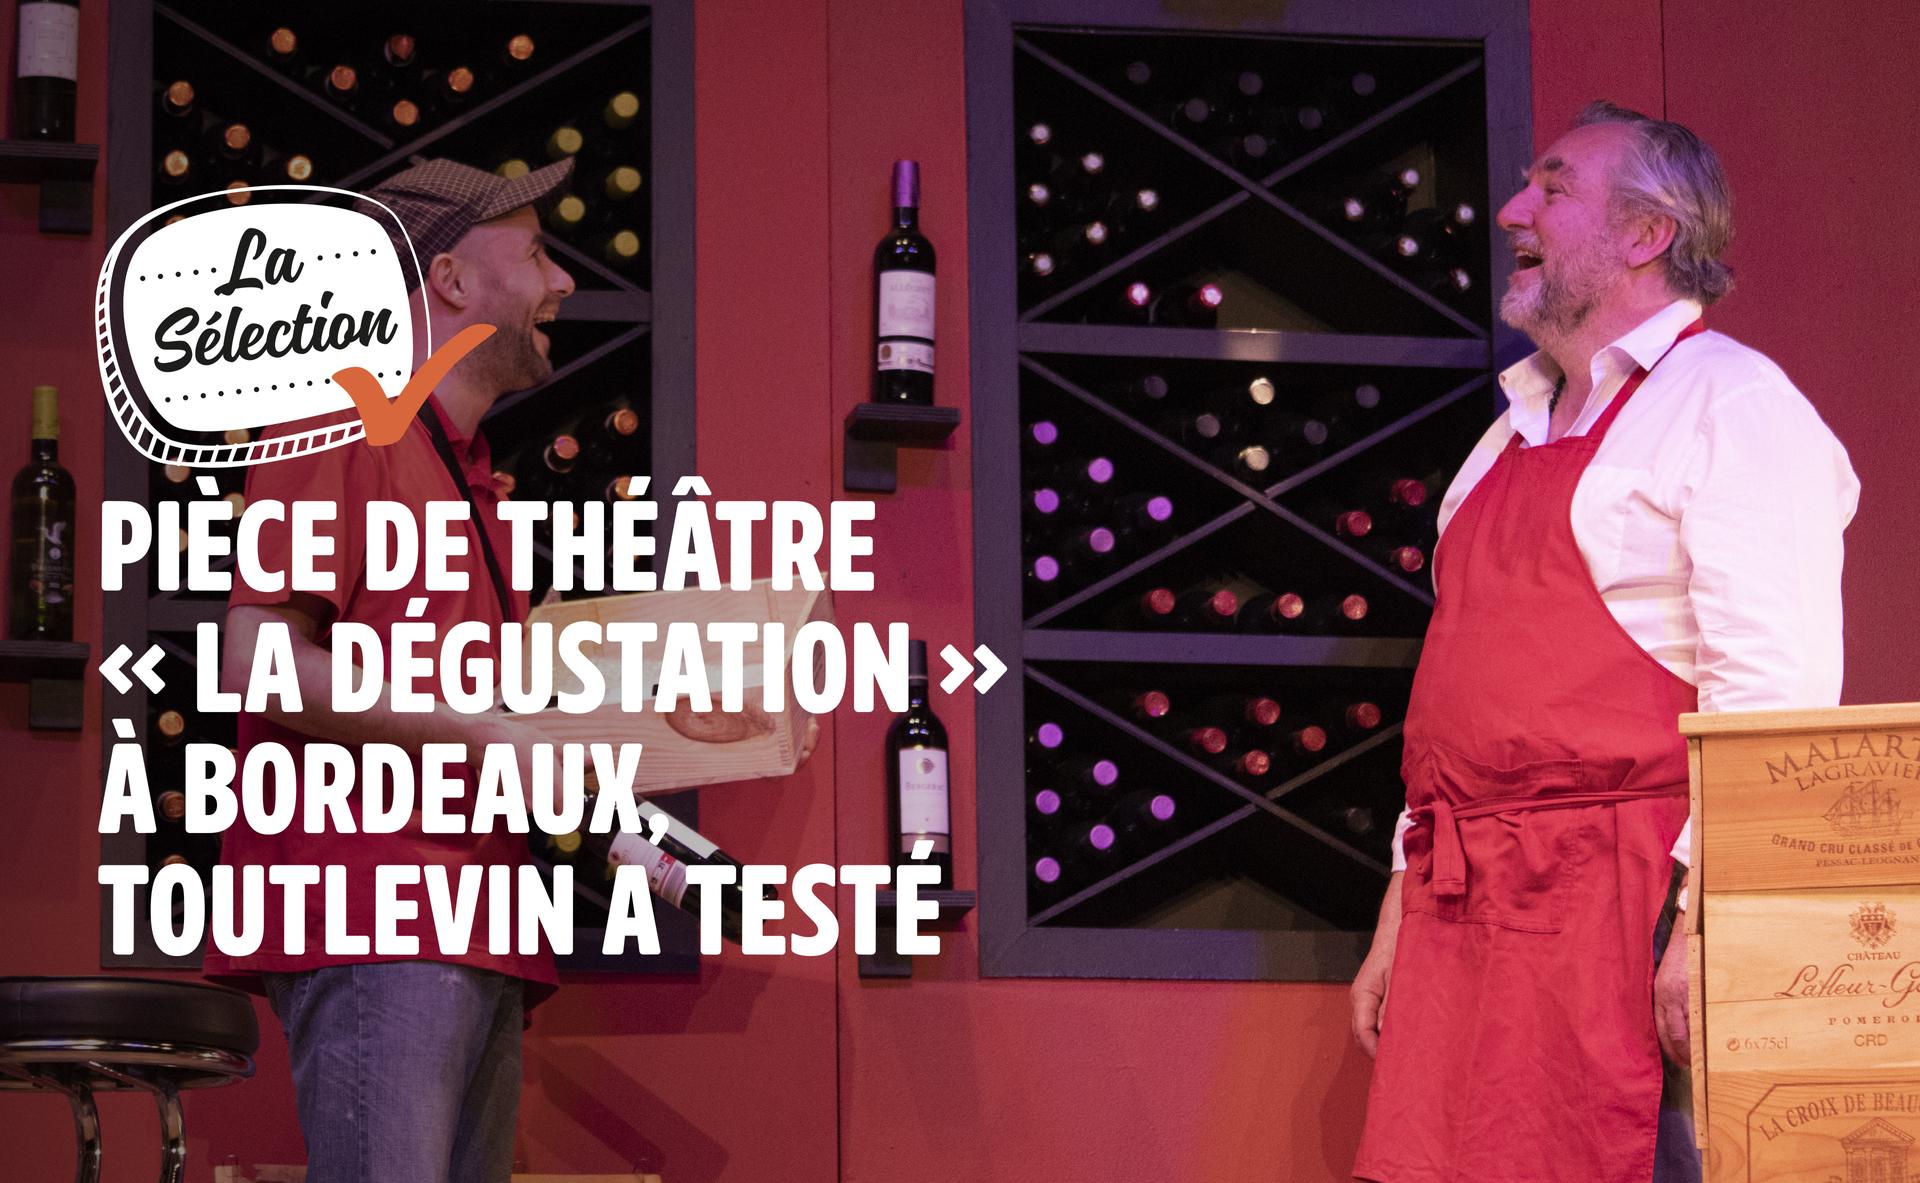 Pièce de Théâtre "La Dégustation" à Bordeaux, Toutlevin a testé !